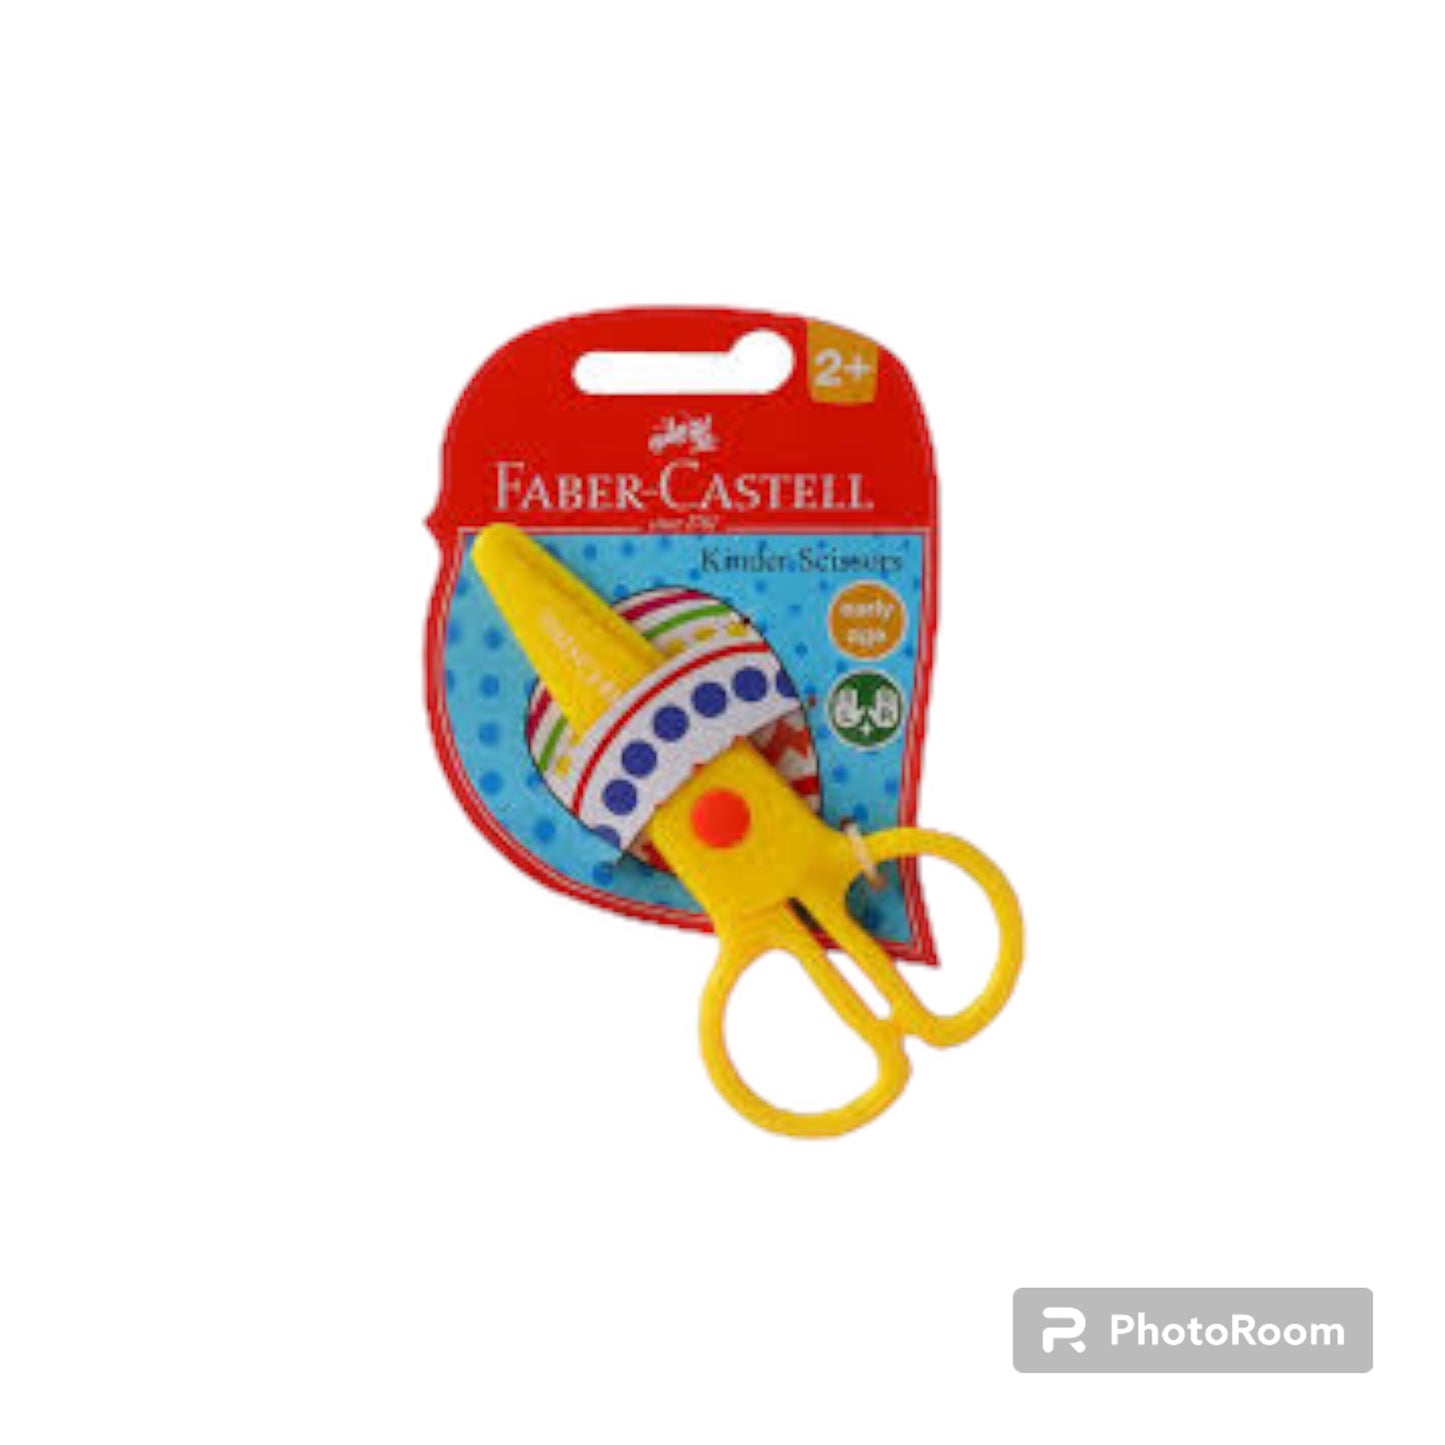 Faber-Castell Kinder Scissors